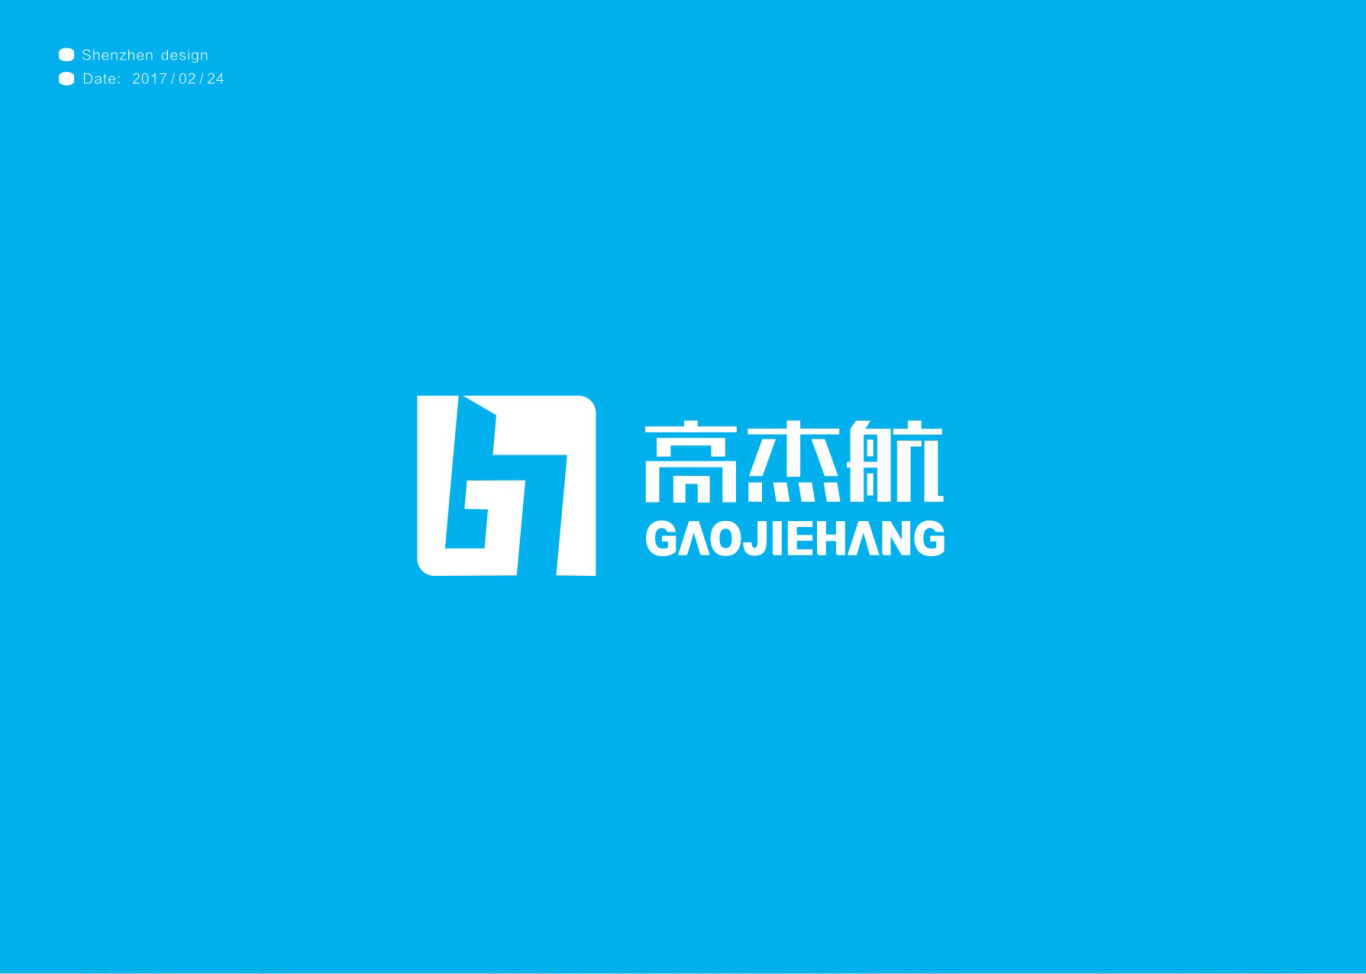 高杰航電子科技公司logo設計圖2